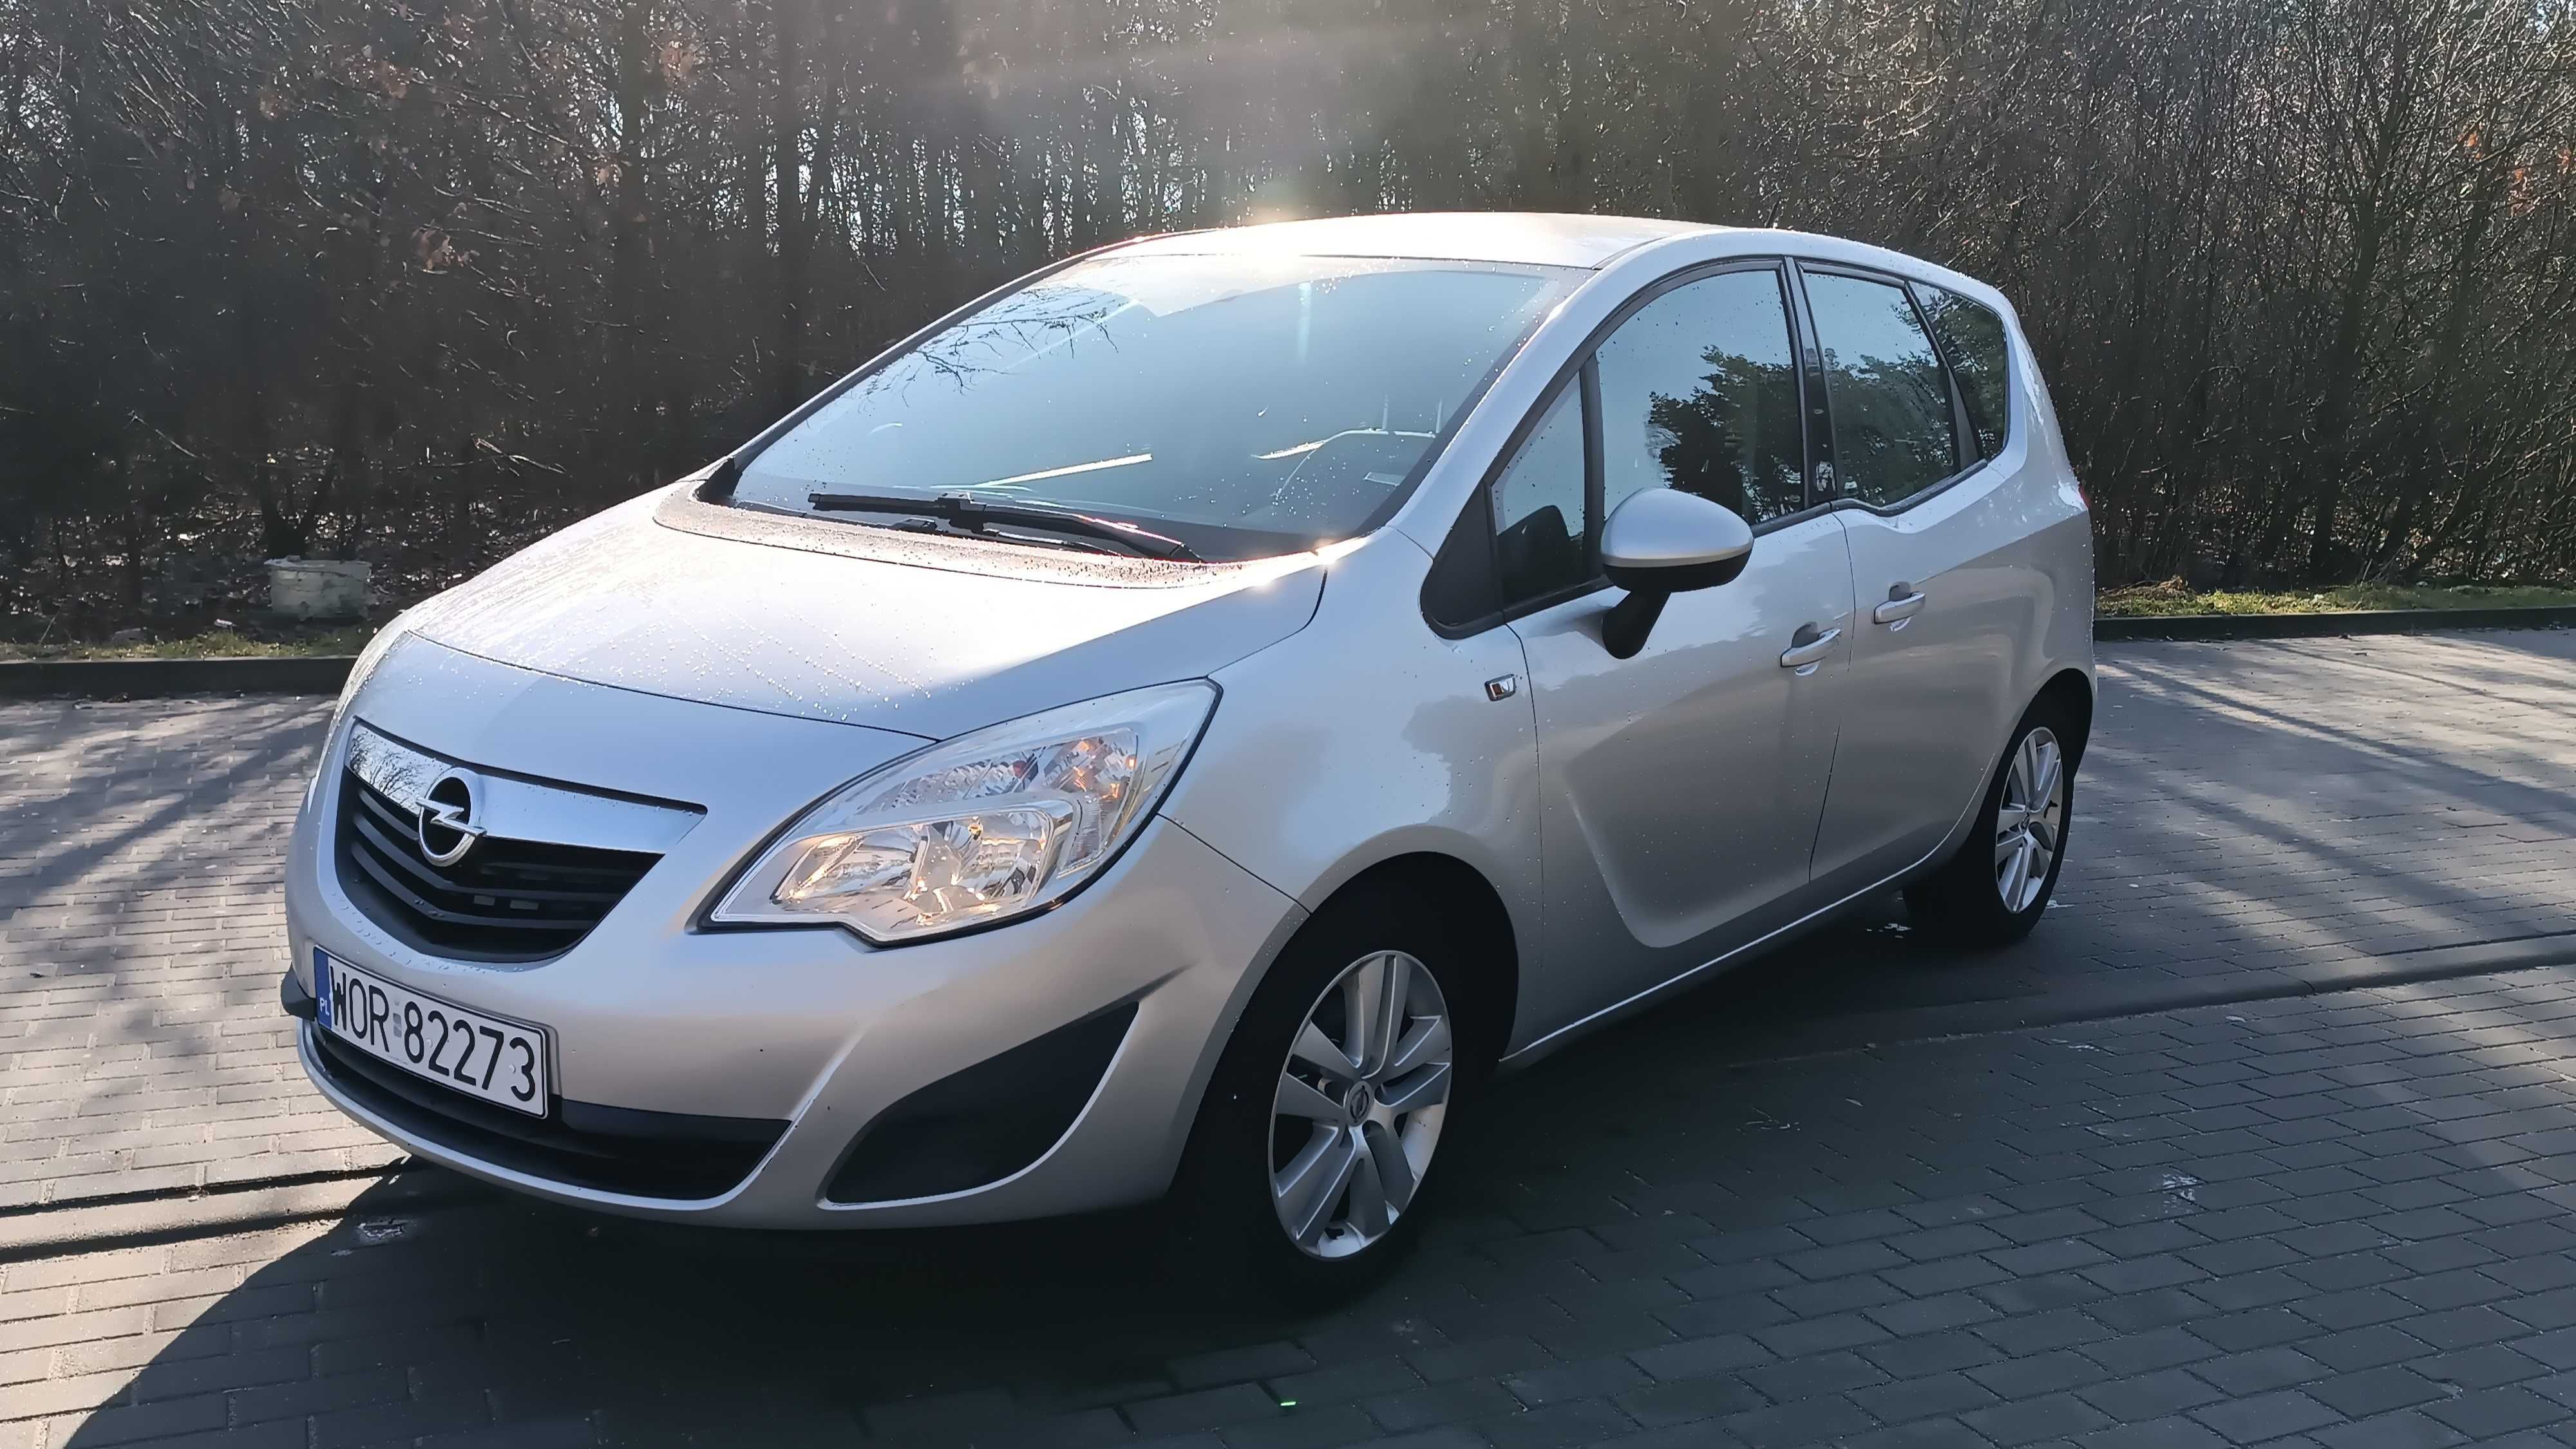 Opel Meriva, Zarejestrowana, 1.4 benzyna, niski przebieg, zadbana